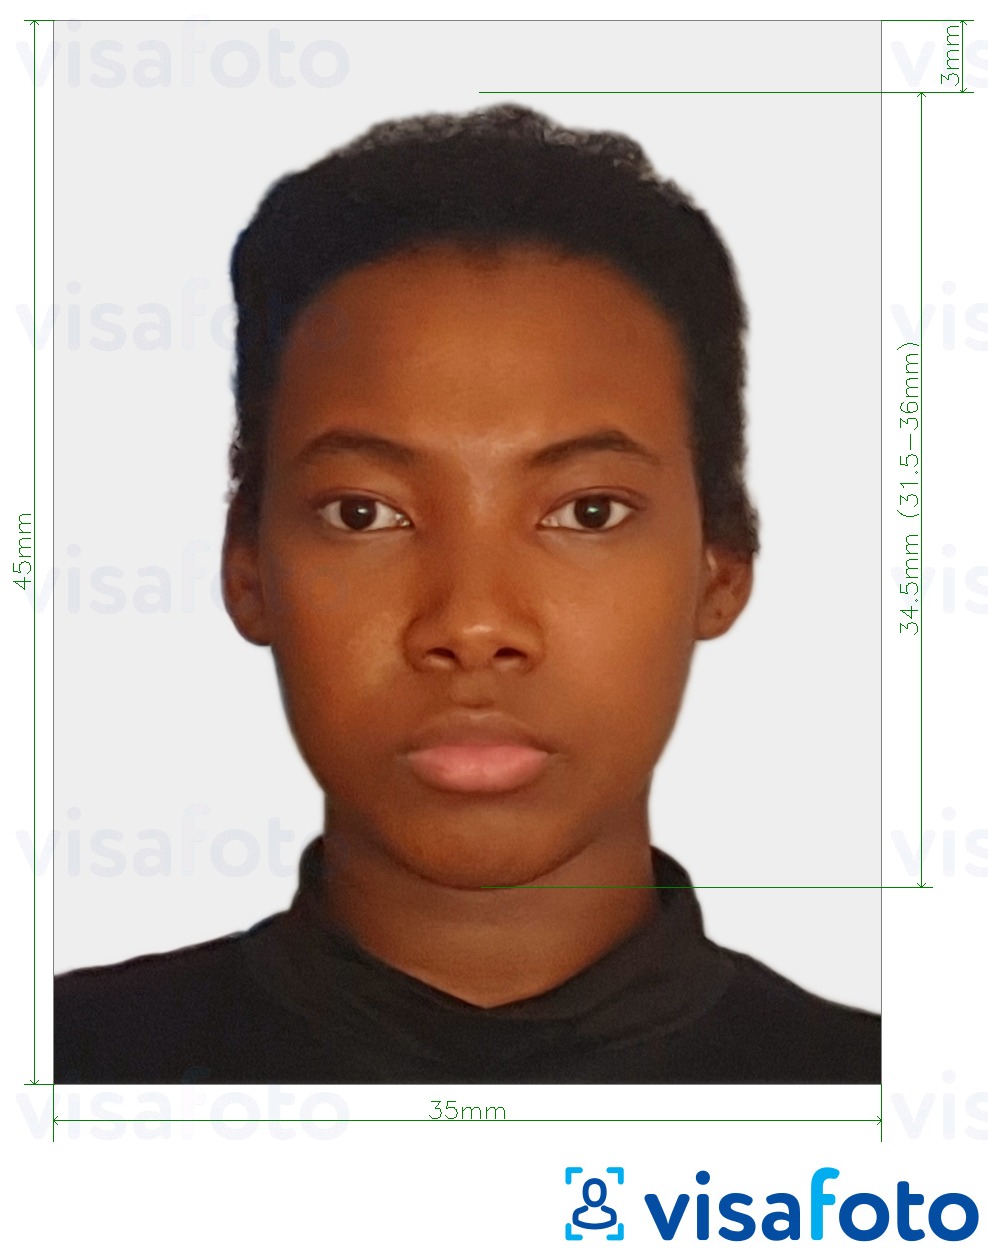  کی تصویر کی مثال سینٹ کٹس اور نیویس پاسپورٹ تصویر 35x45 ملی میٹر (1.77x1.38 